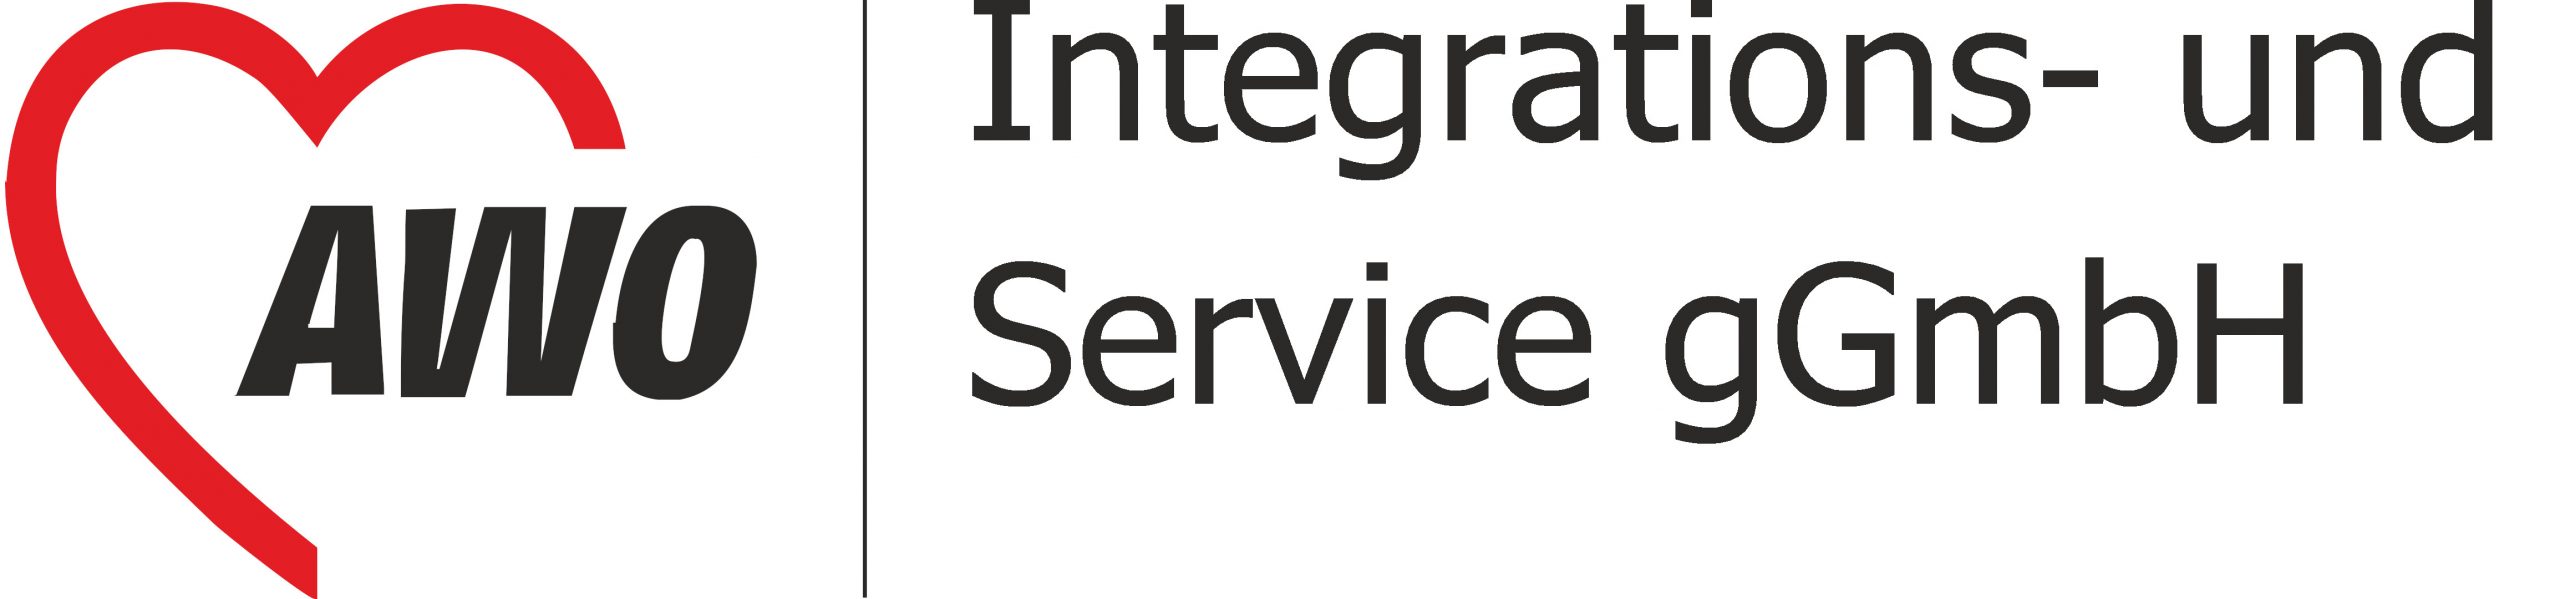 AWO Integrations- und Service gGmbH